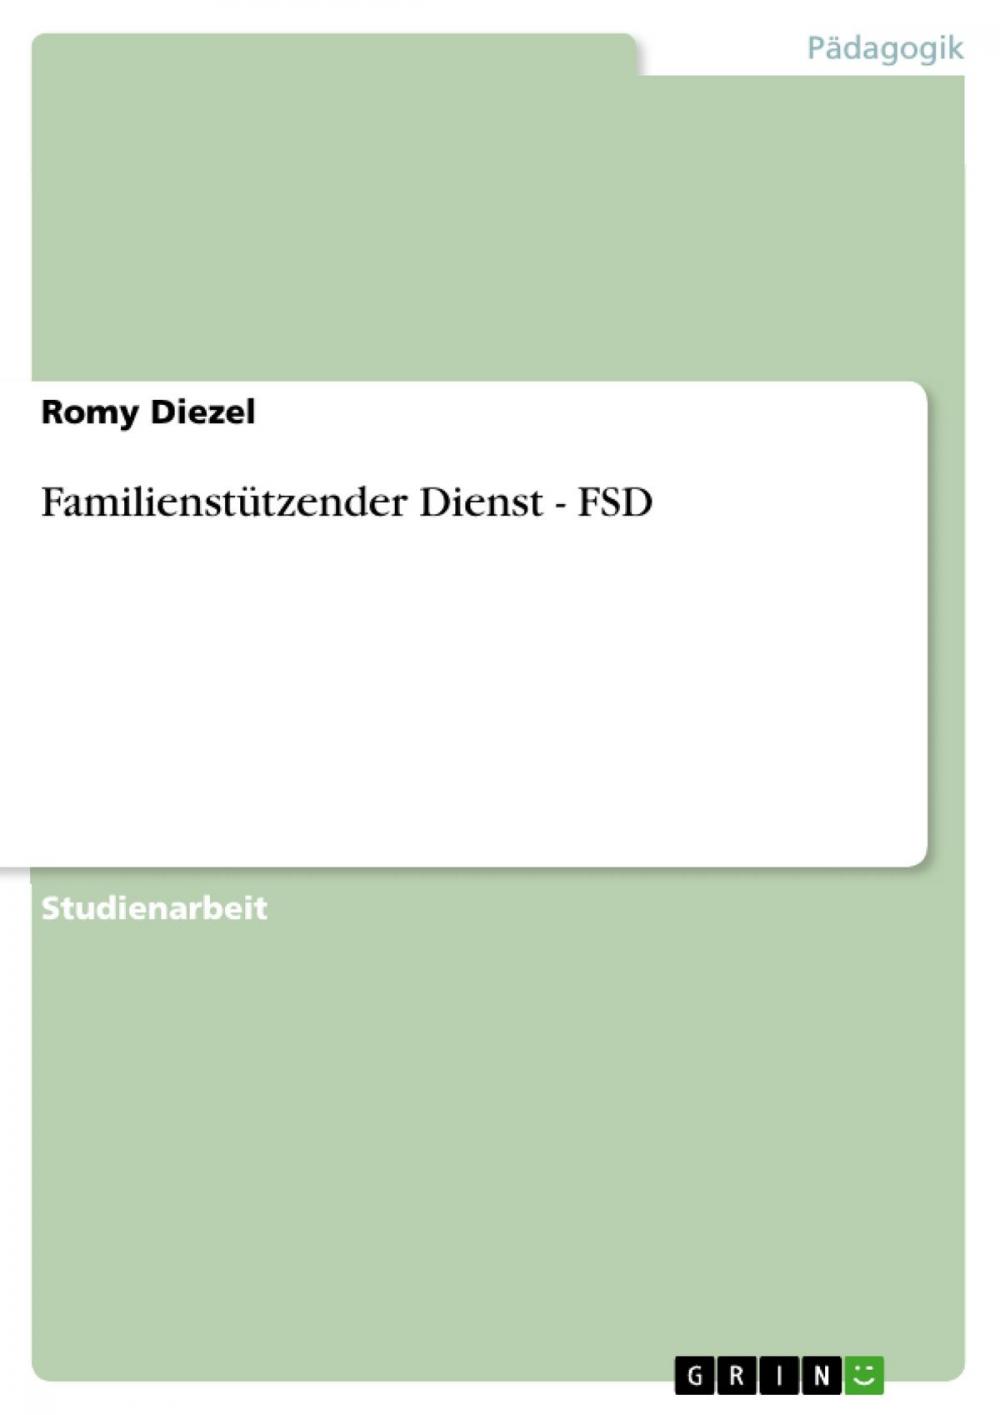 Big bigCover of Familienstützender Dienst - FSD